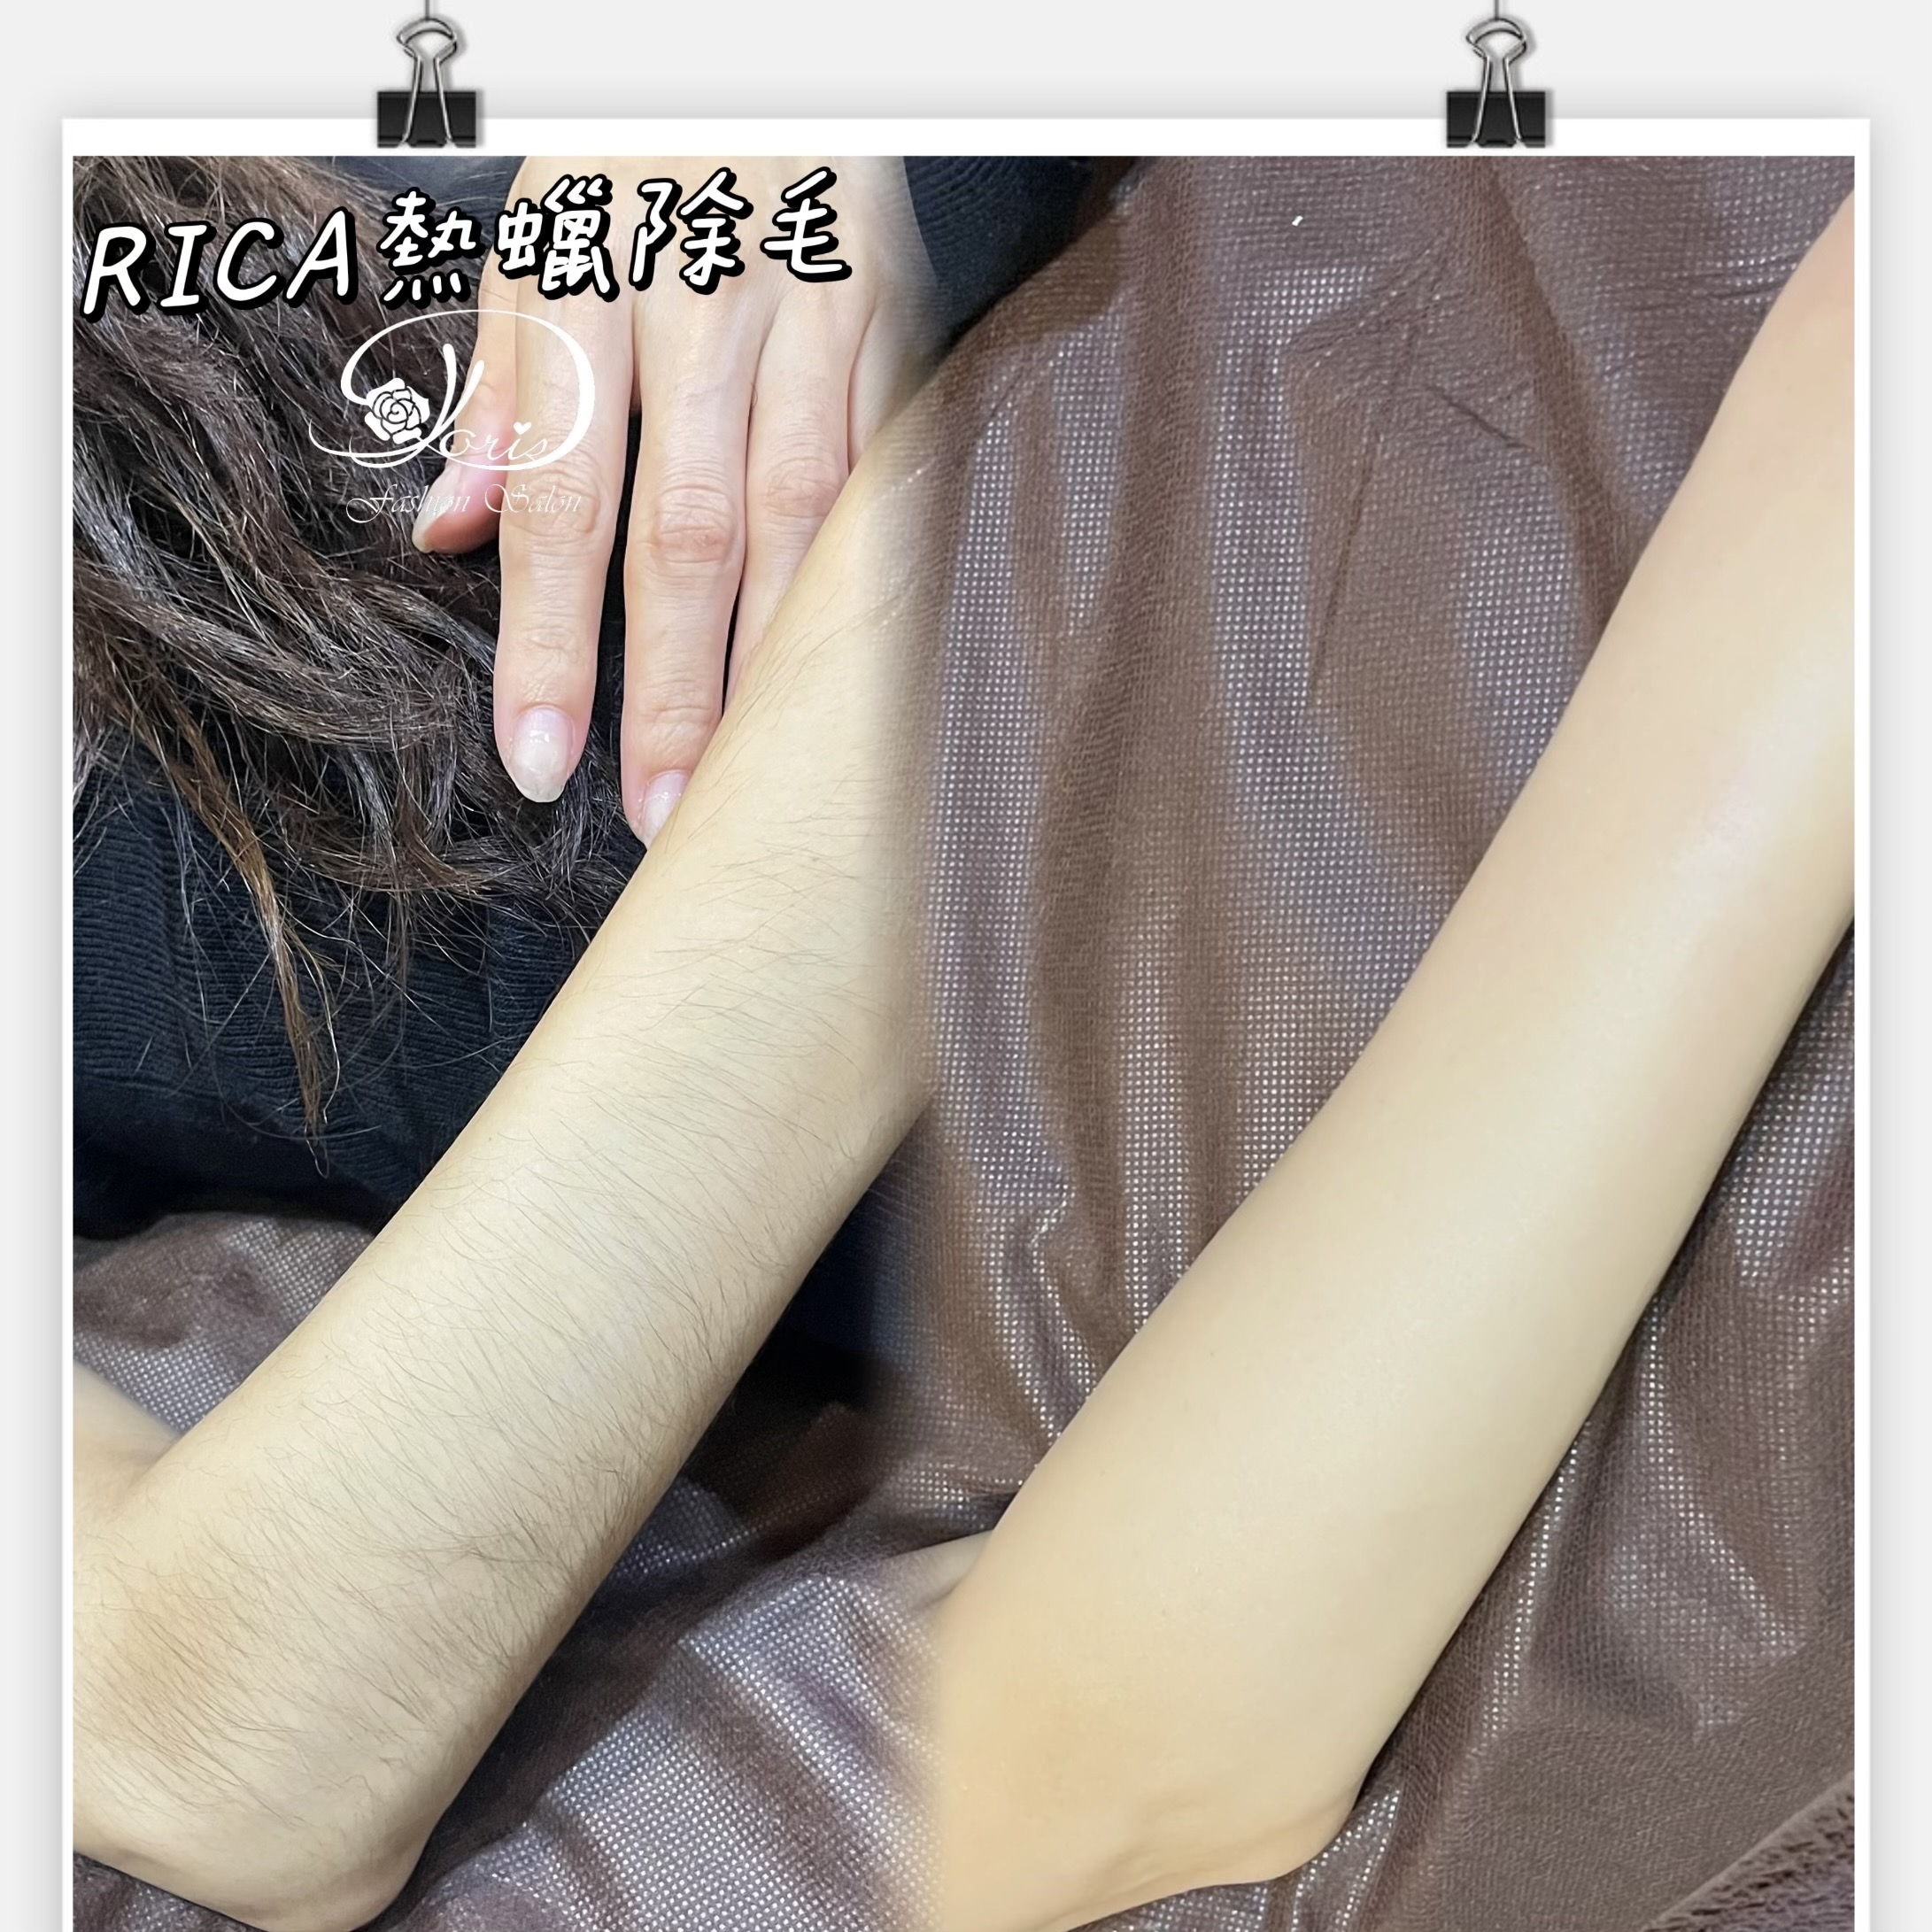 【RICA熱蠟除毛】纖細的手怎麼能容許手毛存在(≧▽≦))熱蠟除毛完立即光滑肌，自己看了心情好~